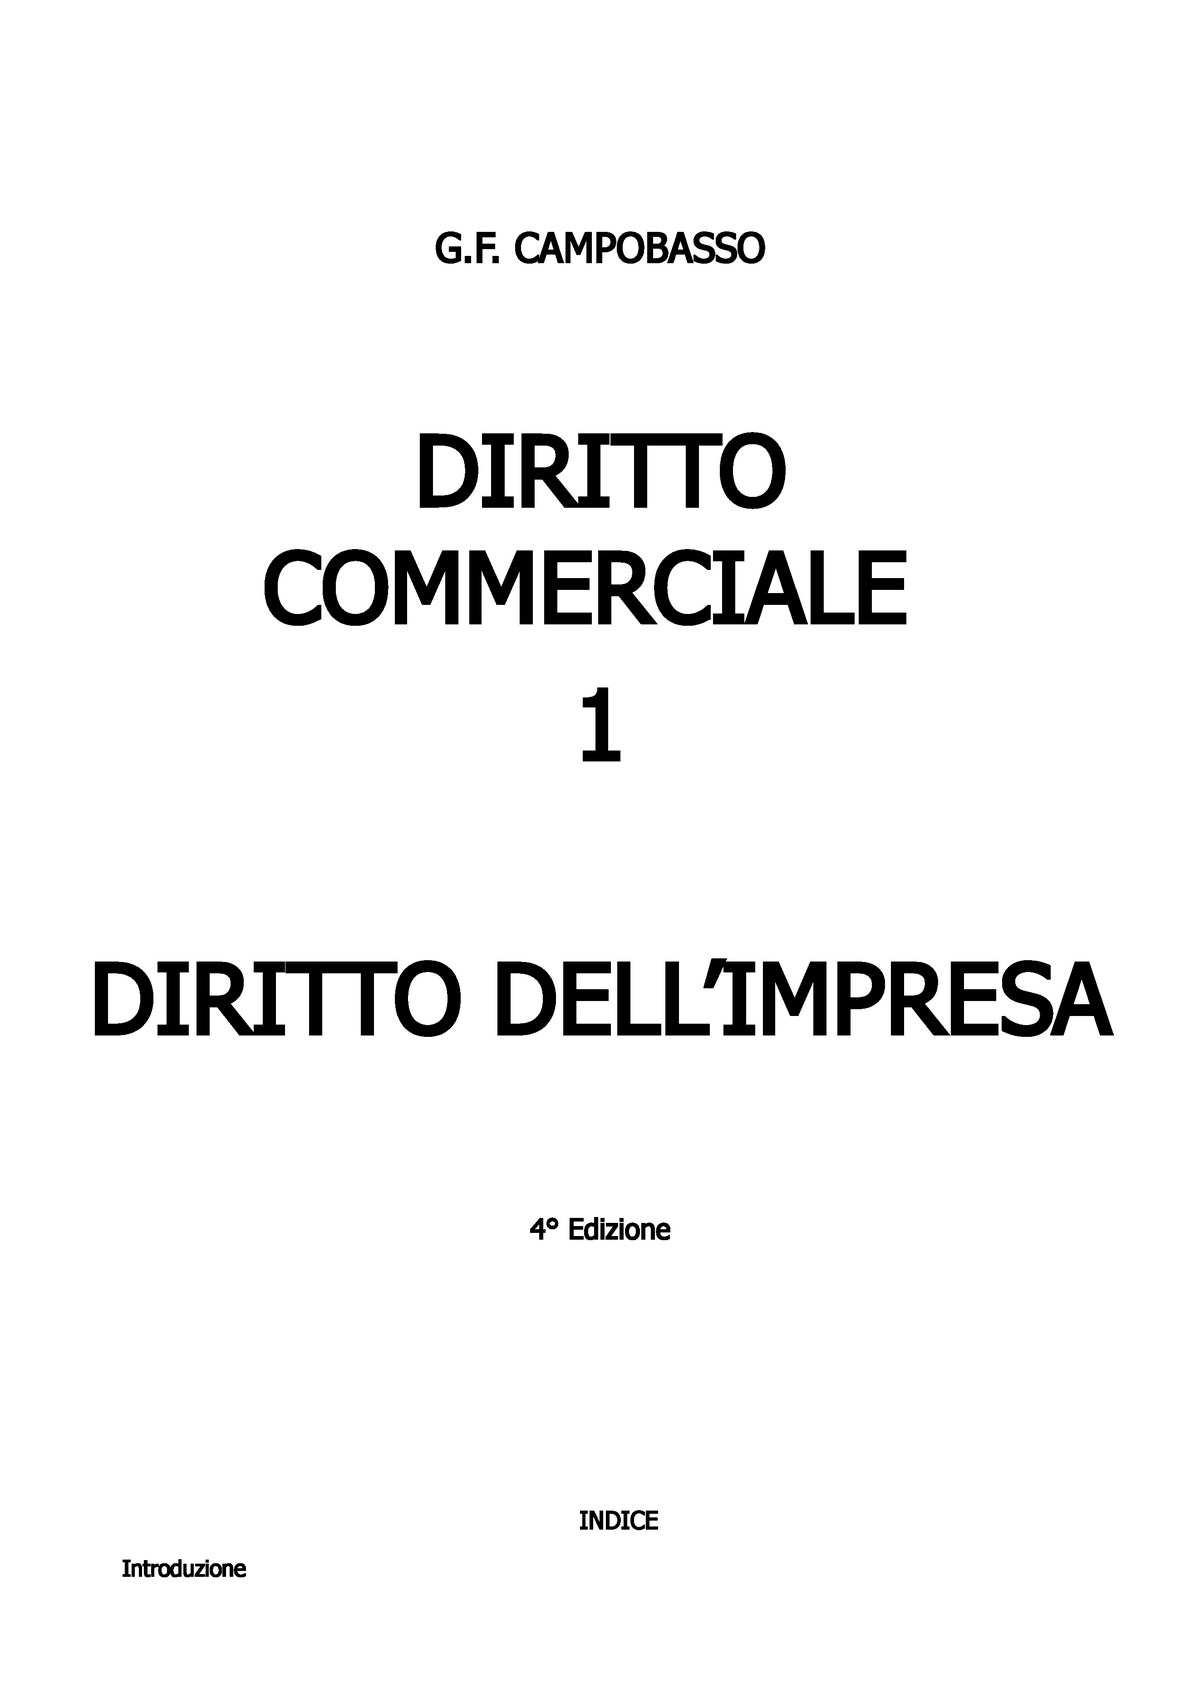 Diritto commerciale (riassunto primo volume campobasso) - G. CAMPOBASSO  DIRITTO COMMERCIALE 1 - Studocu